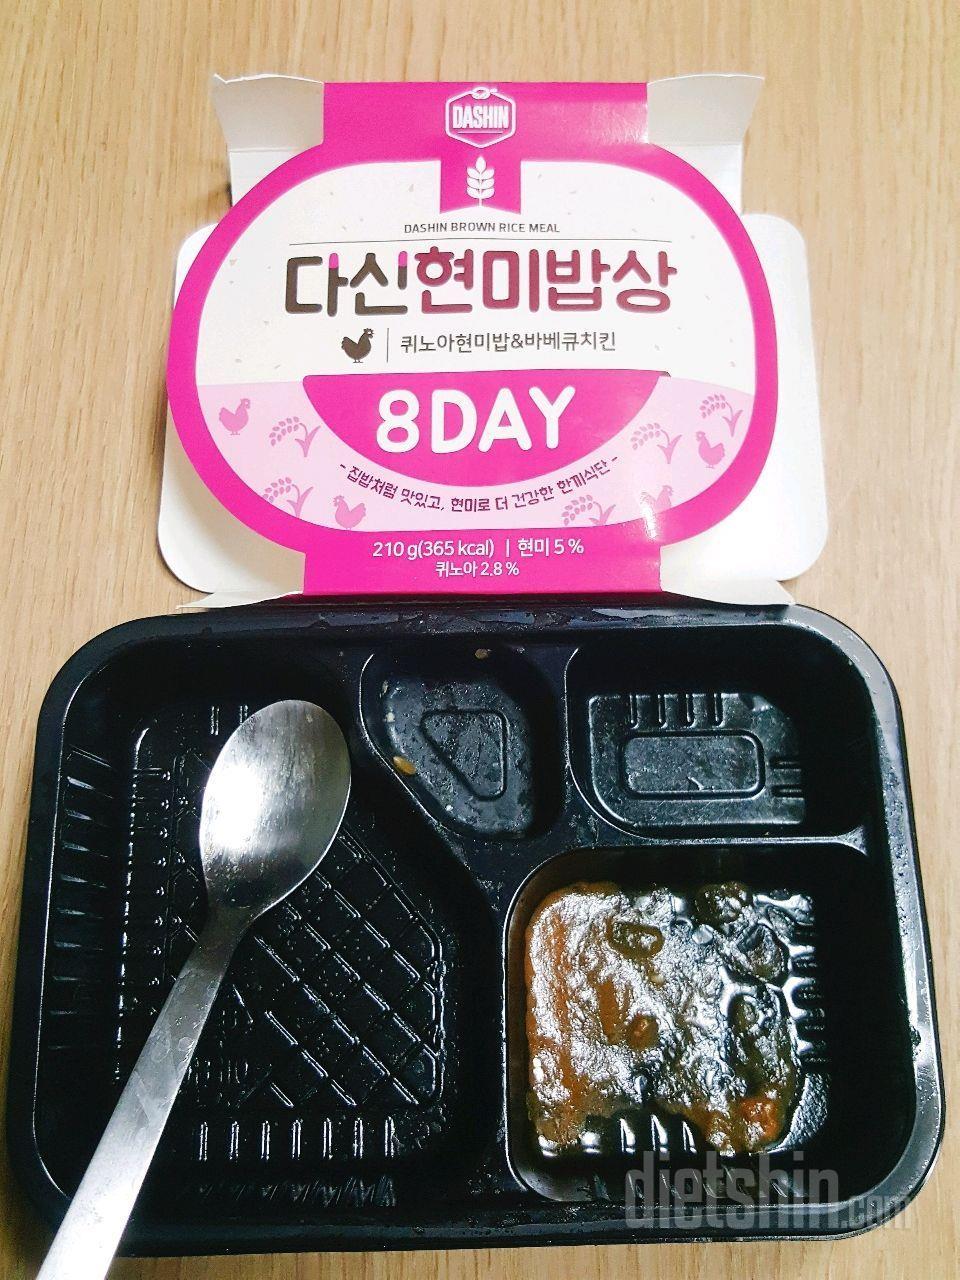 🍱다신현미밥상 8DAY :퀴노아현미밥 & 바베큐치킨🍱 으로 다이어트 한끼~!